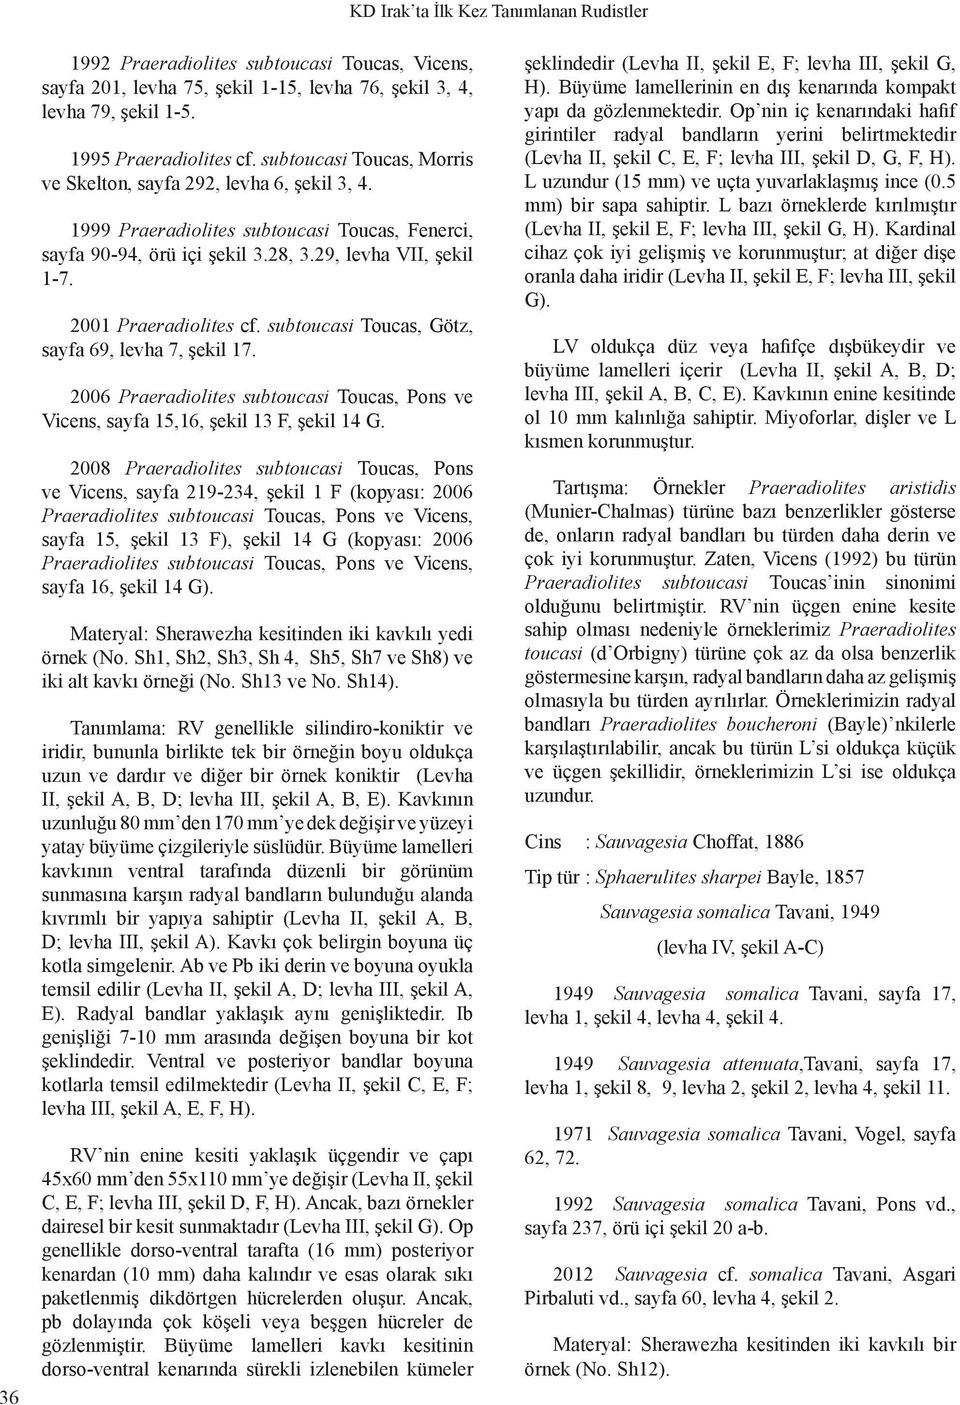 2001 Praeradiolites cf. subtoucasi Toucas, Götz, sayfa 69, levha 7, şekil 17. 2006 Praeradiolites subtoucasi Toucas, Pons ve Vicens, sayfa 15,16, şekil 13 F, şekil 14 G.